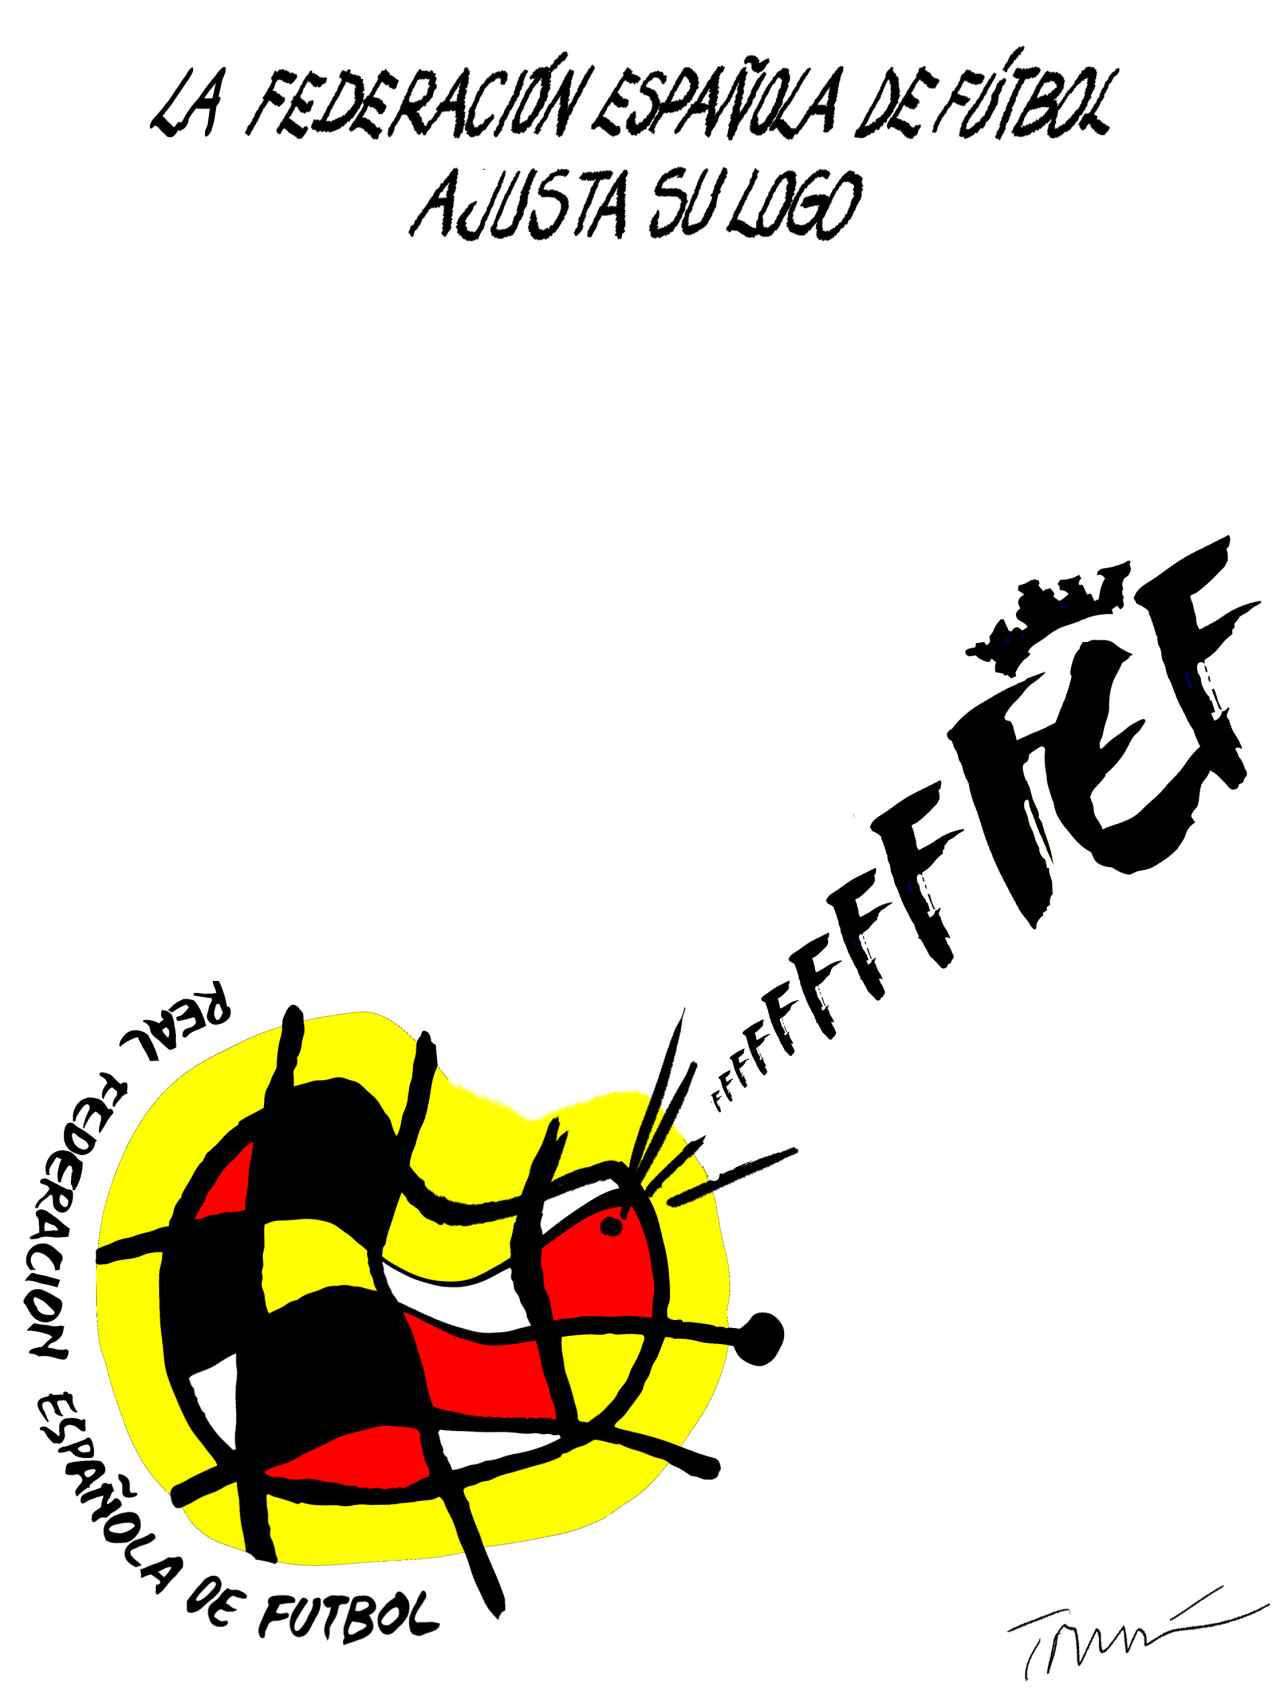 La FEF ajusta su logo